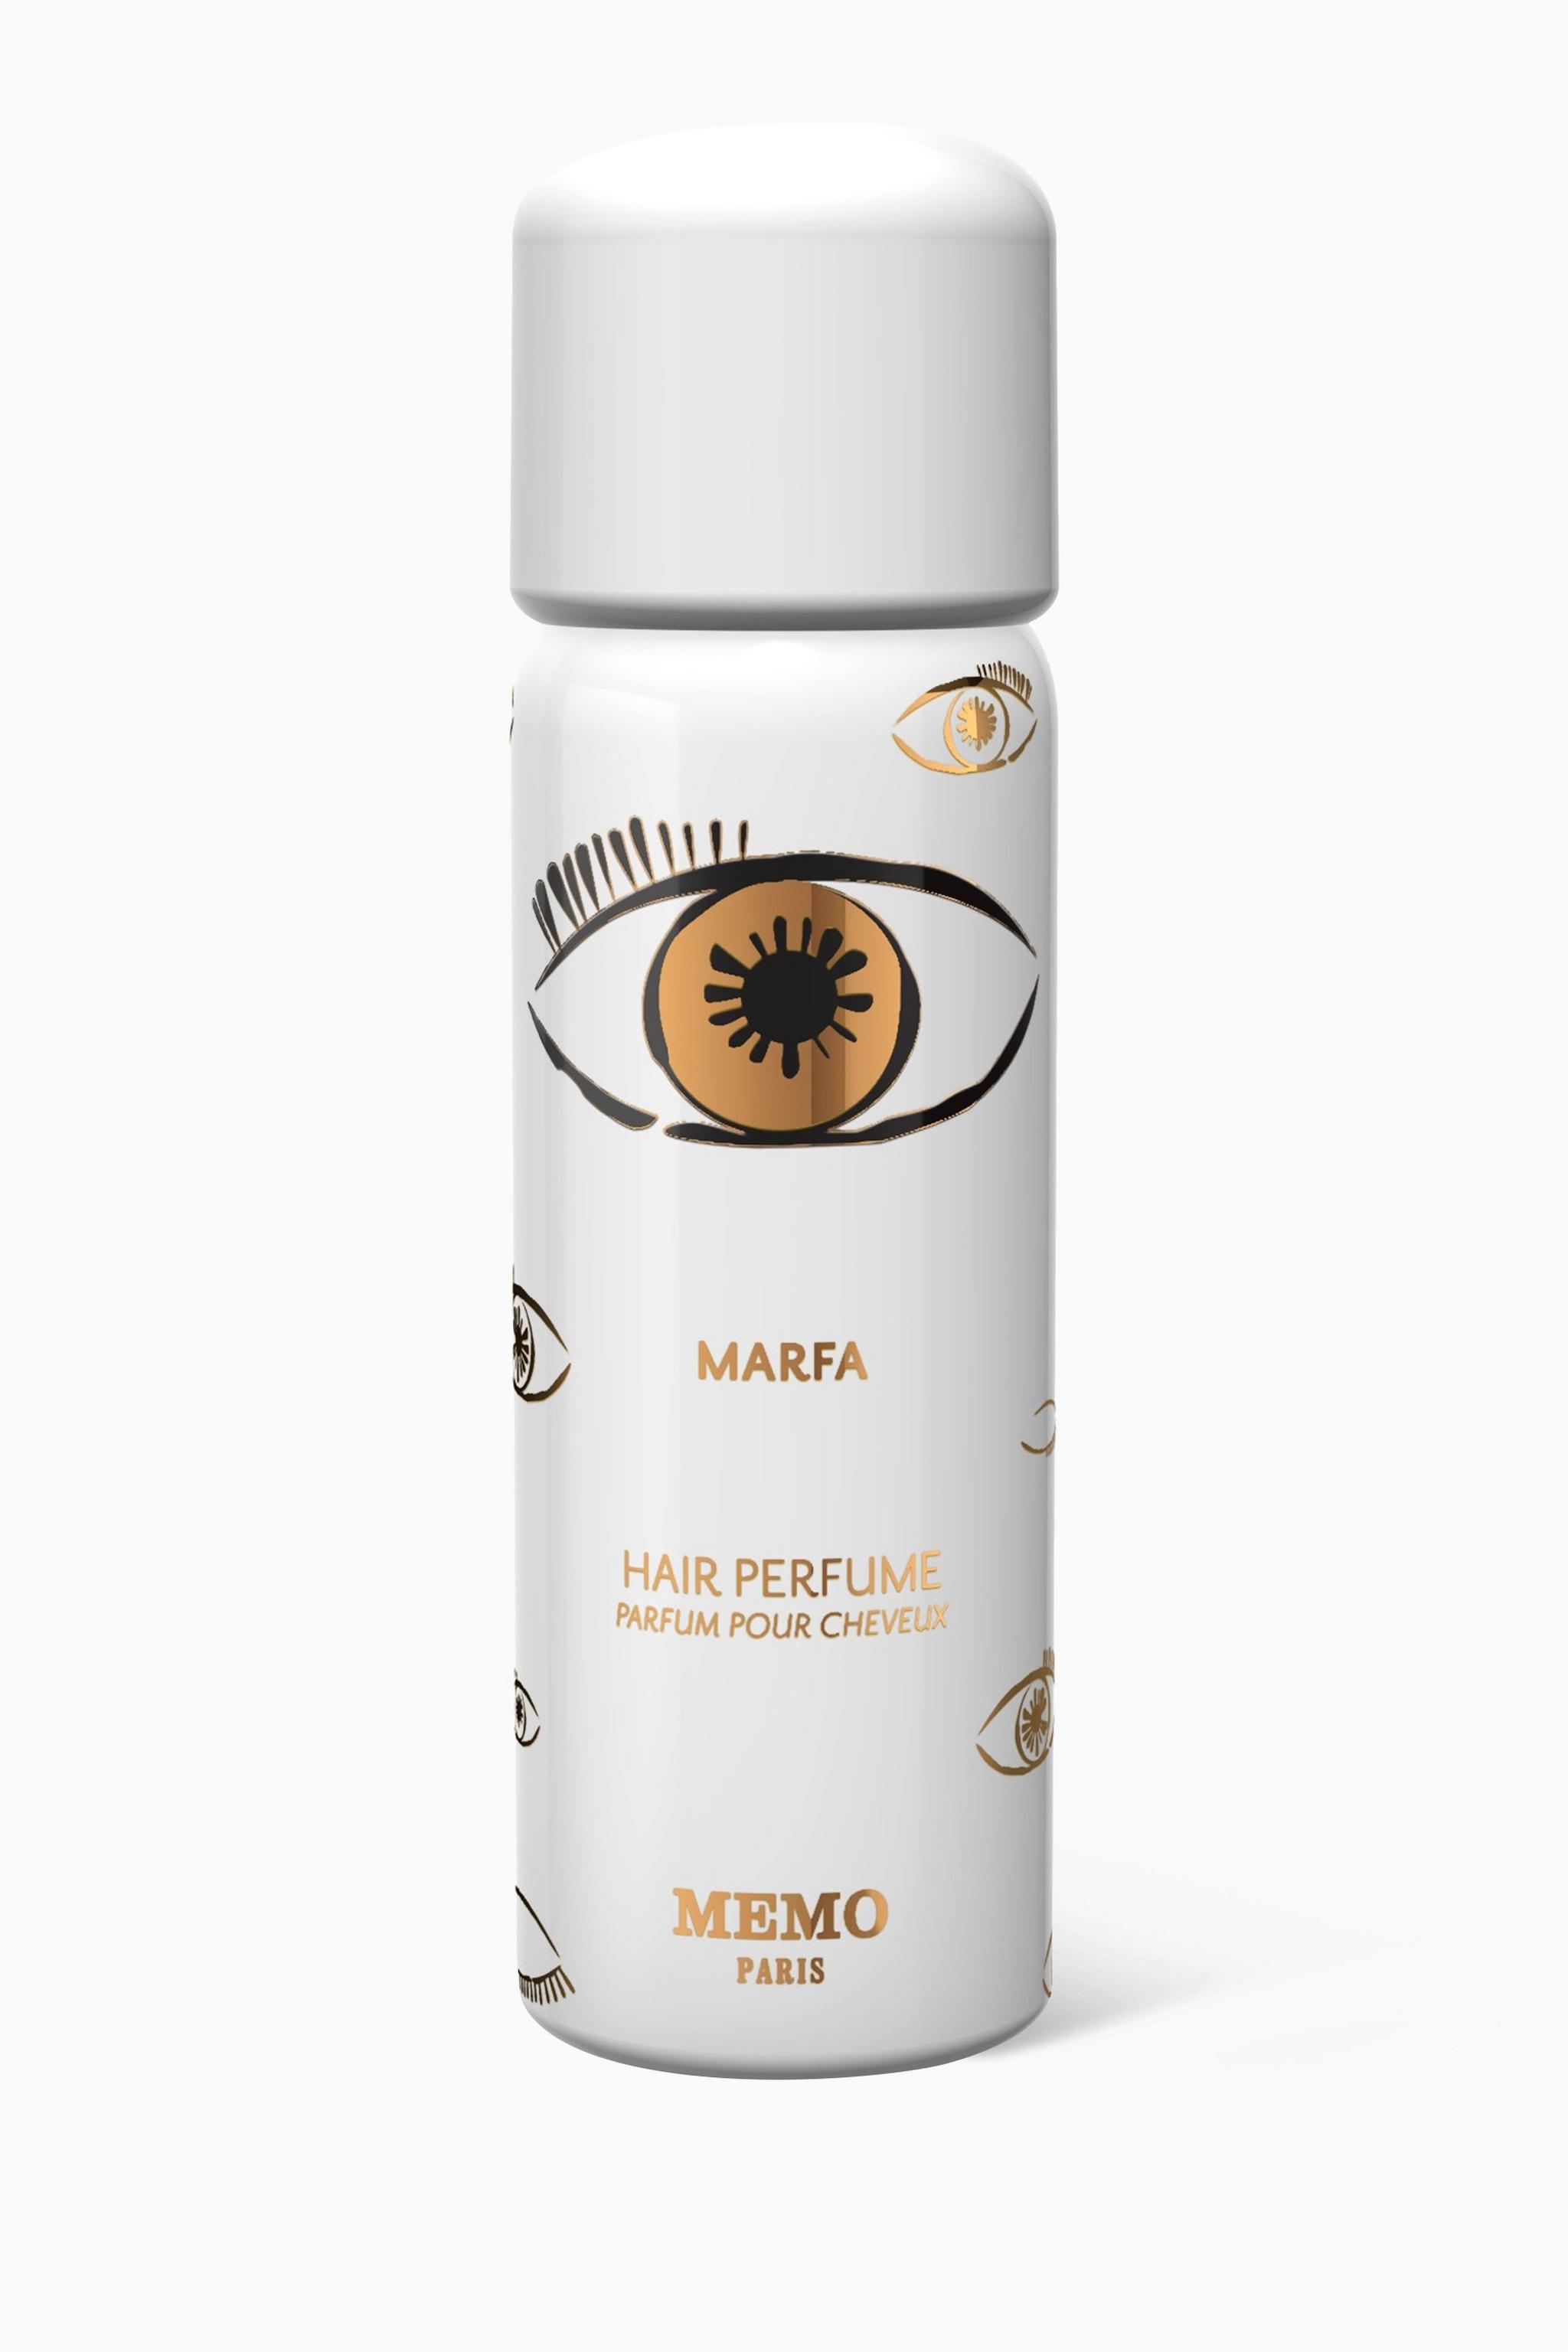 MEMO Marfa - Hair Perfume 80 ml